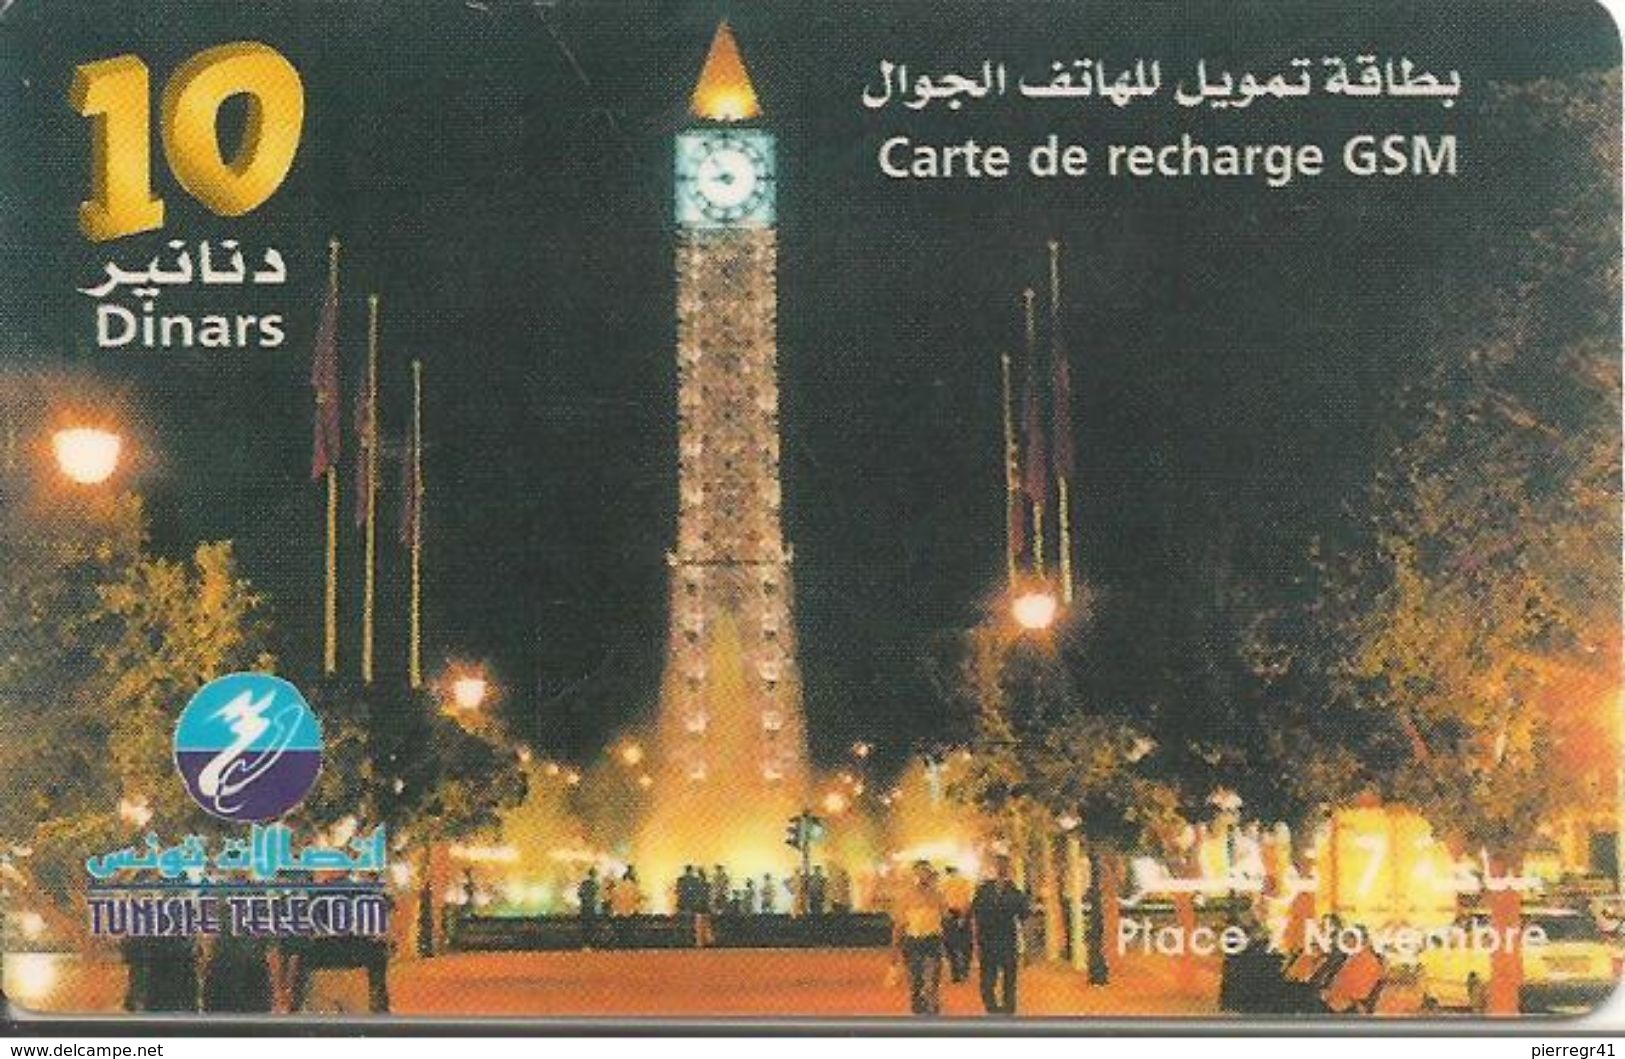 CARTE-PREPAYEE-TUNISIE-GSM-10Dinars-TUNISIE TELECOM-TUNIS PLACE Du 7 Novembre- Plastic Fin-TBE - Tunisia